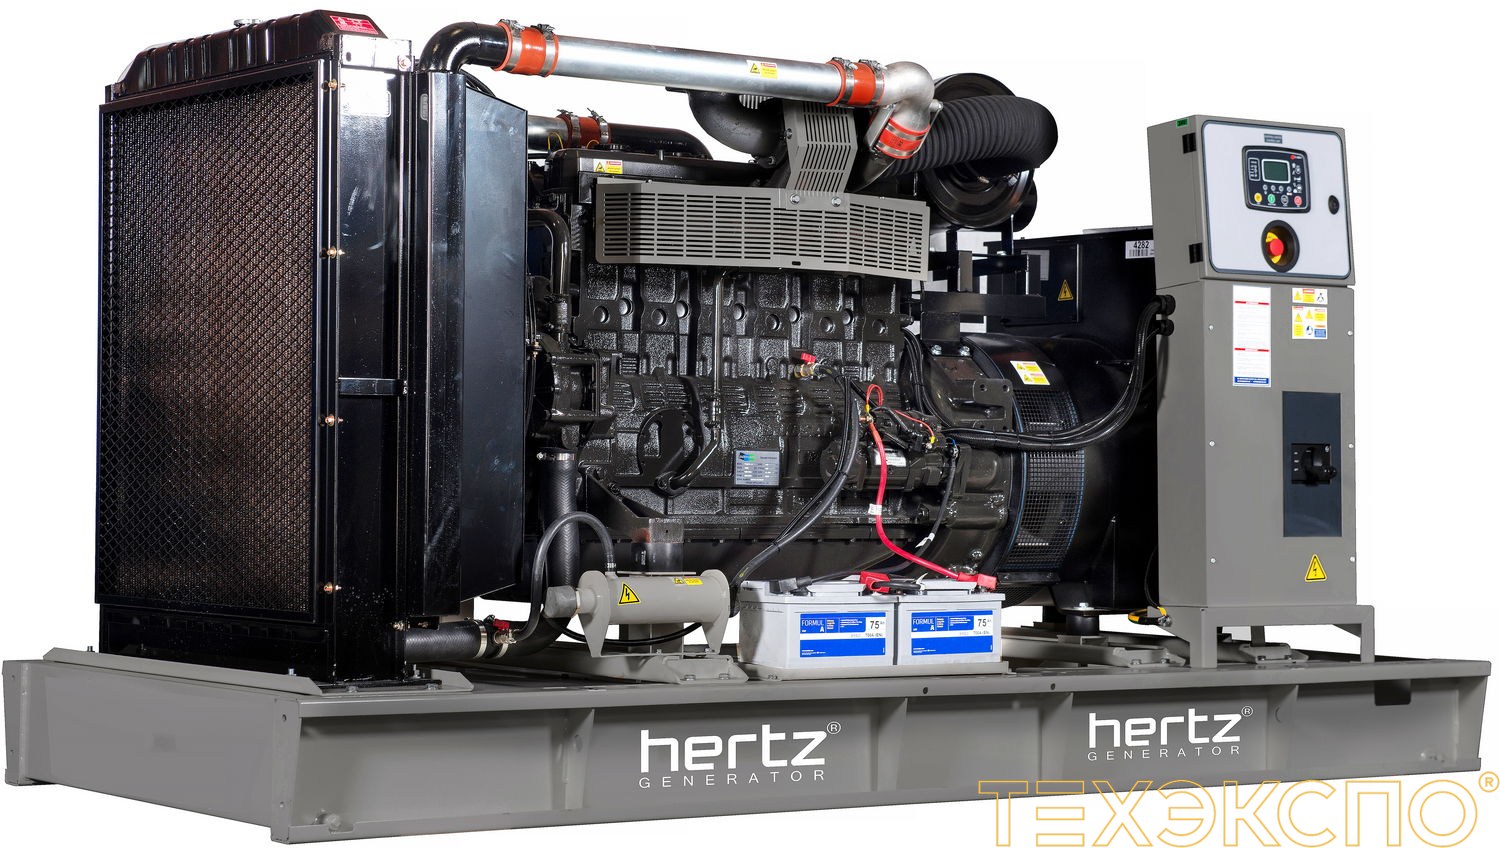 HERTZ HG180DL - ДЭС 132 кВт в Санкт-Петербурге за 3 046 018 рублей | Дизельная электростанция в Техэкспо